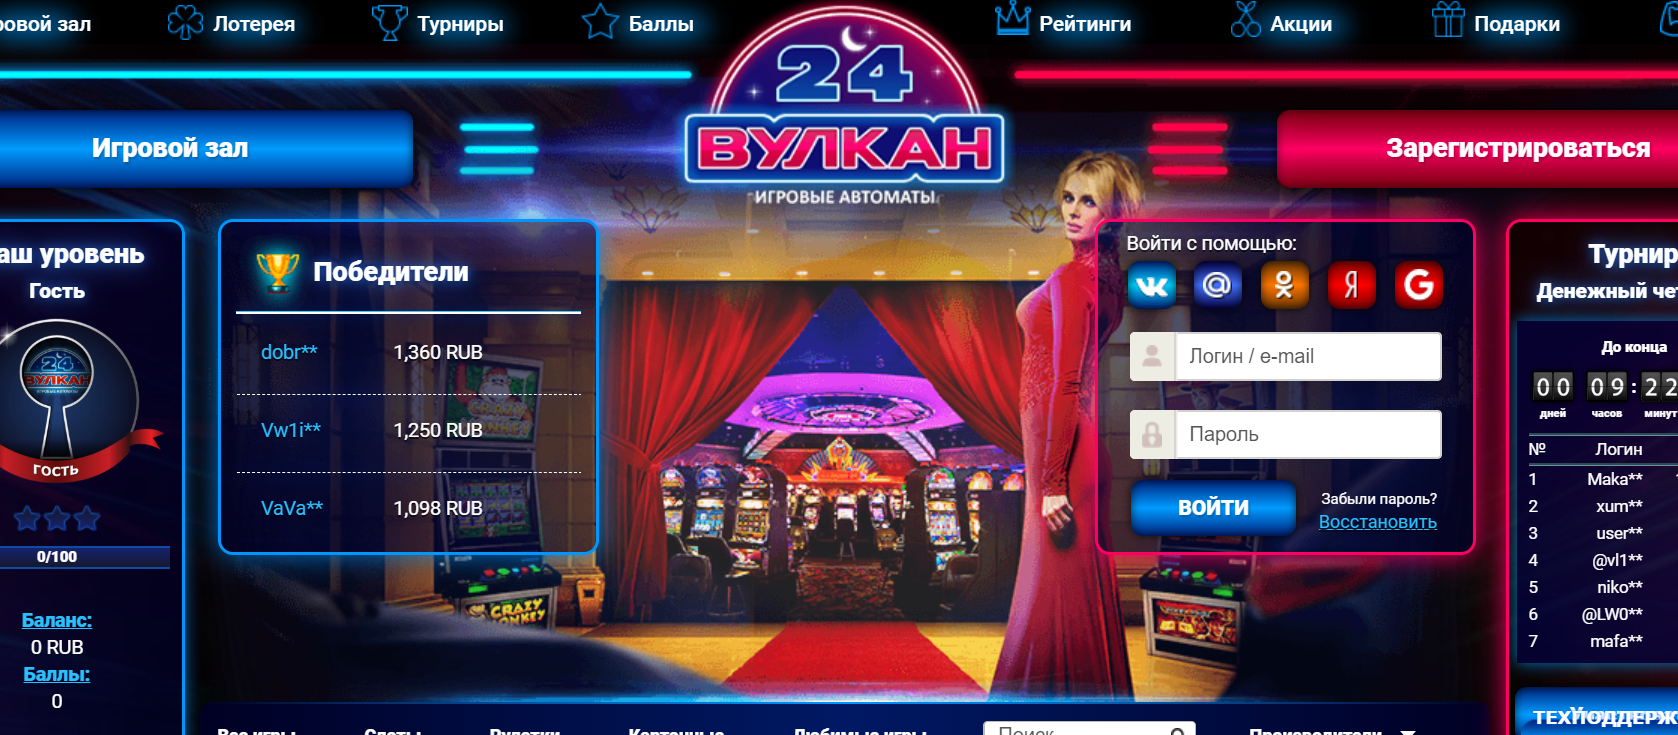 Автоматы в казино Вулкан 24 – способ реального заработка